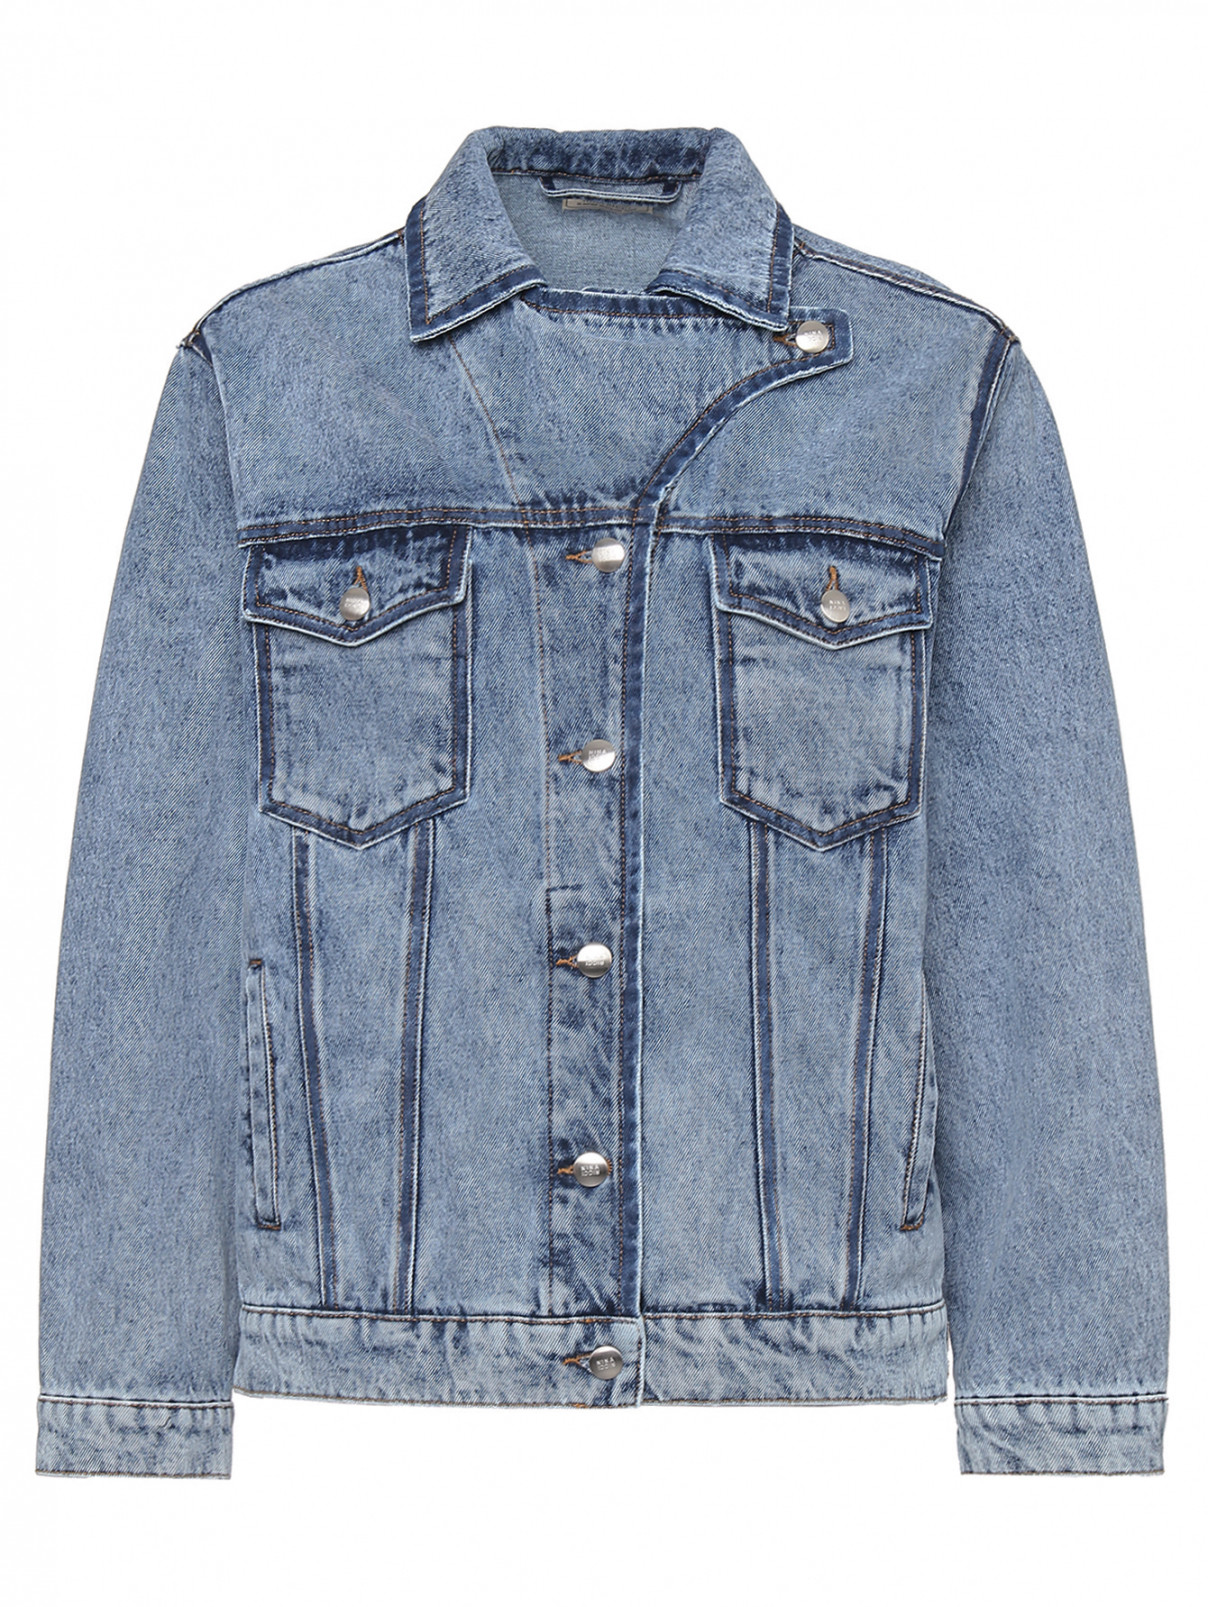 Джинсовая куртка из хлопка с карманами Nina Ricci  –  Общий вид  – Цвет:  Синий